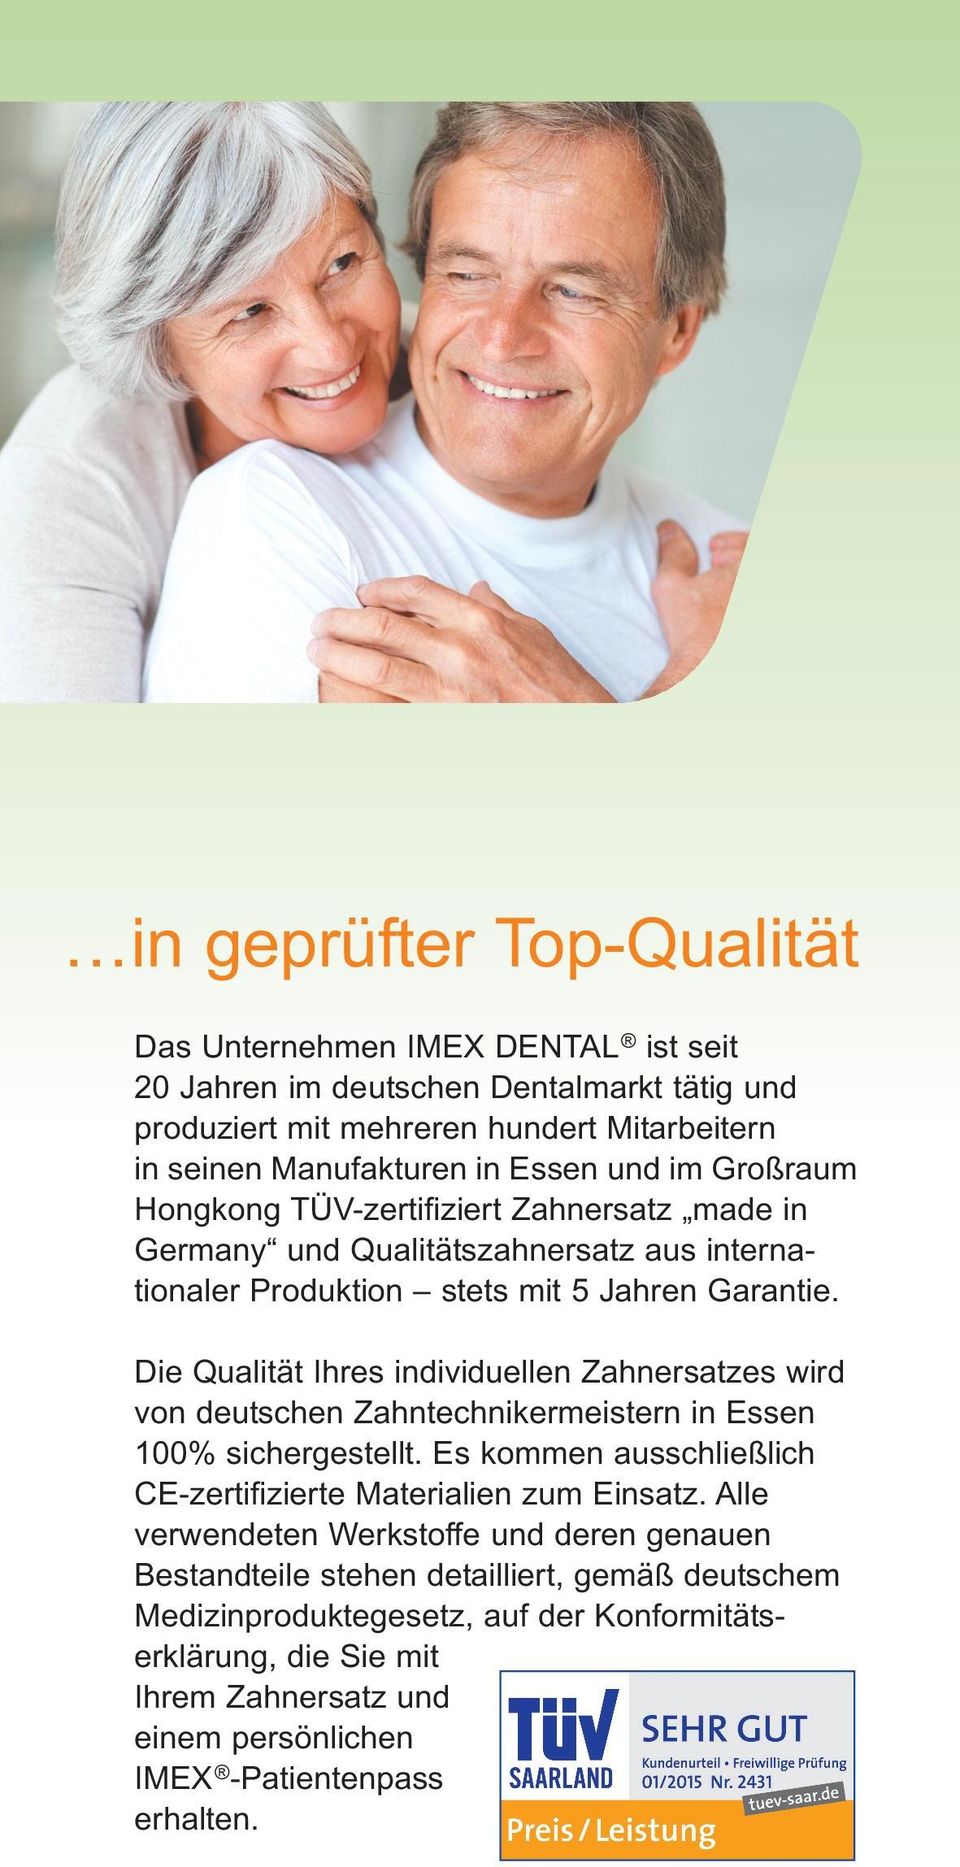 Die Qualität Ihres individuellen Zahnersatzes wird von deutschen Zahntechnikermeistern in Essen 100% sichergestellt. Es kommen ausschließlich CE-zertifizierte Materialien zum Einsatz.